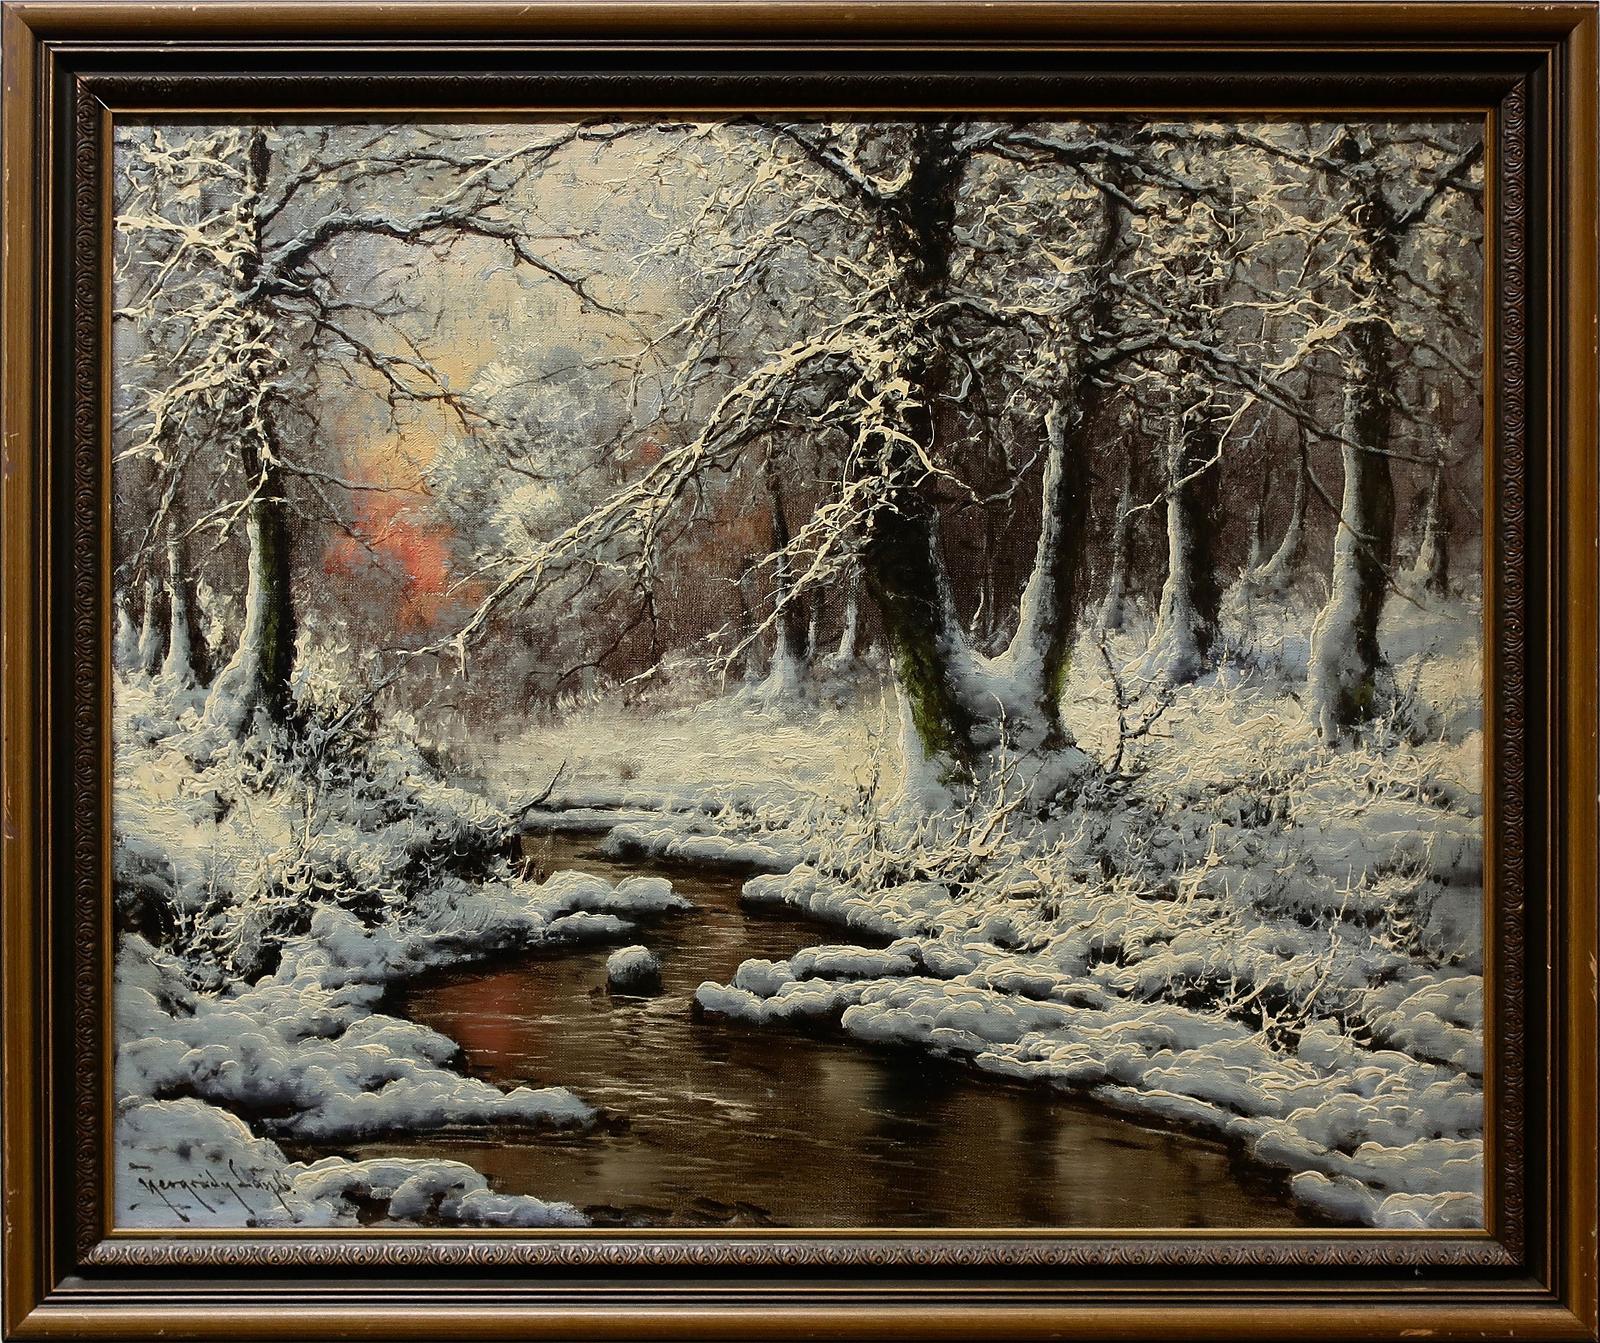 László Neogrády (1896-1962) - Untitled (Winter Creek Study)